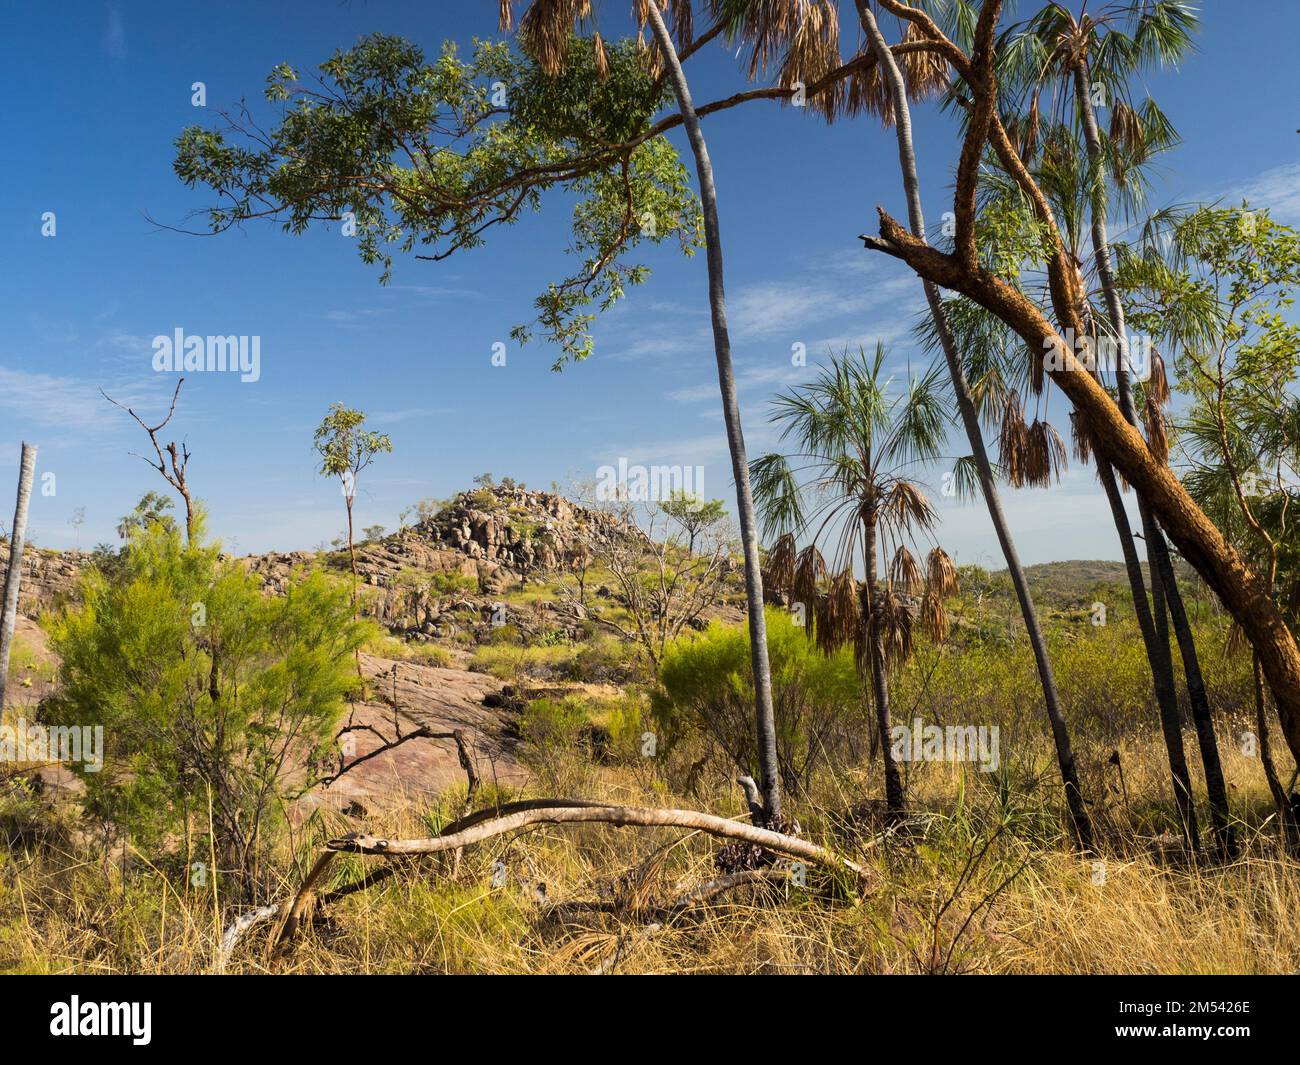 Stone Country et livistona Palm, parc national de Nitmiluk, territoire du Nord, Australie Banque D'Images